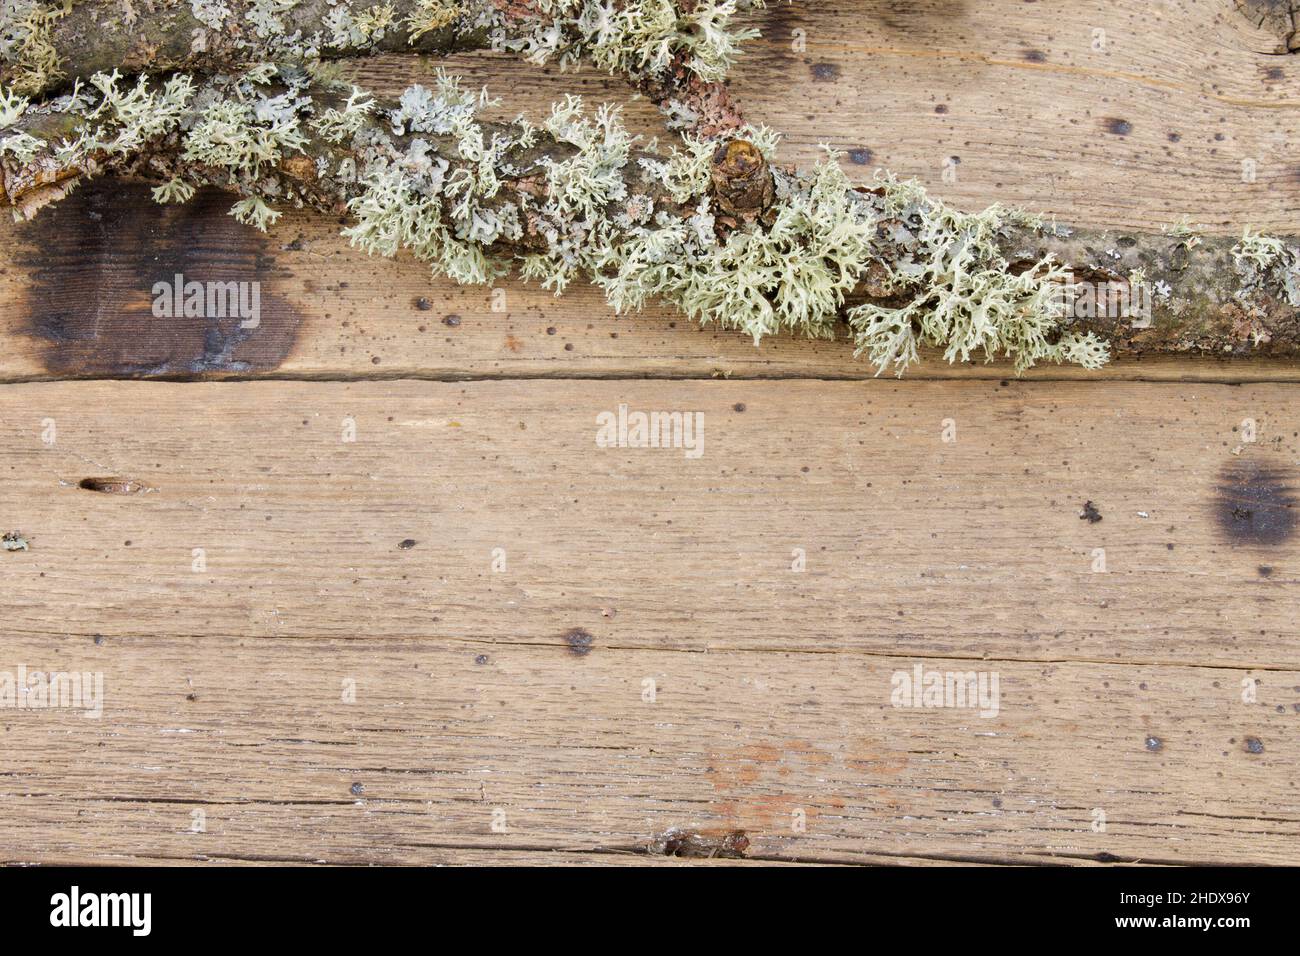 lichen, oakmoss, lichens Stock Photo